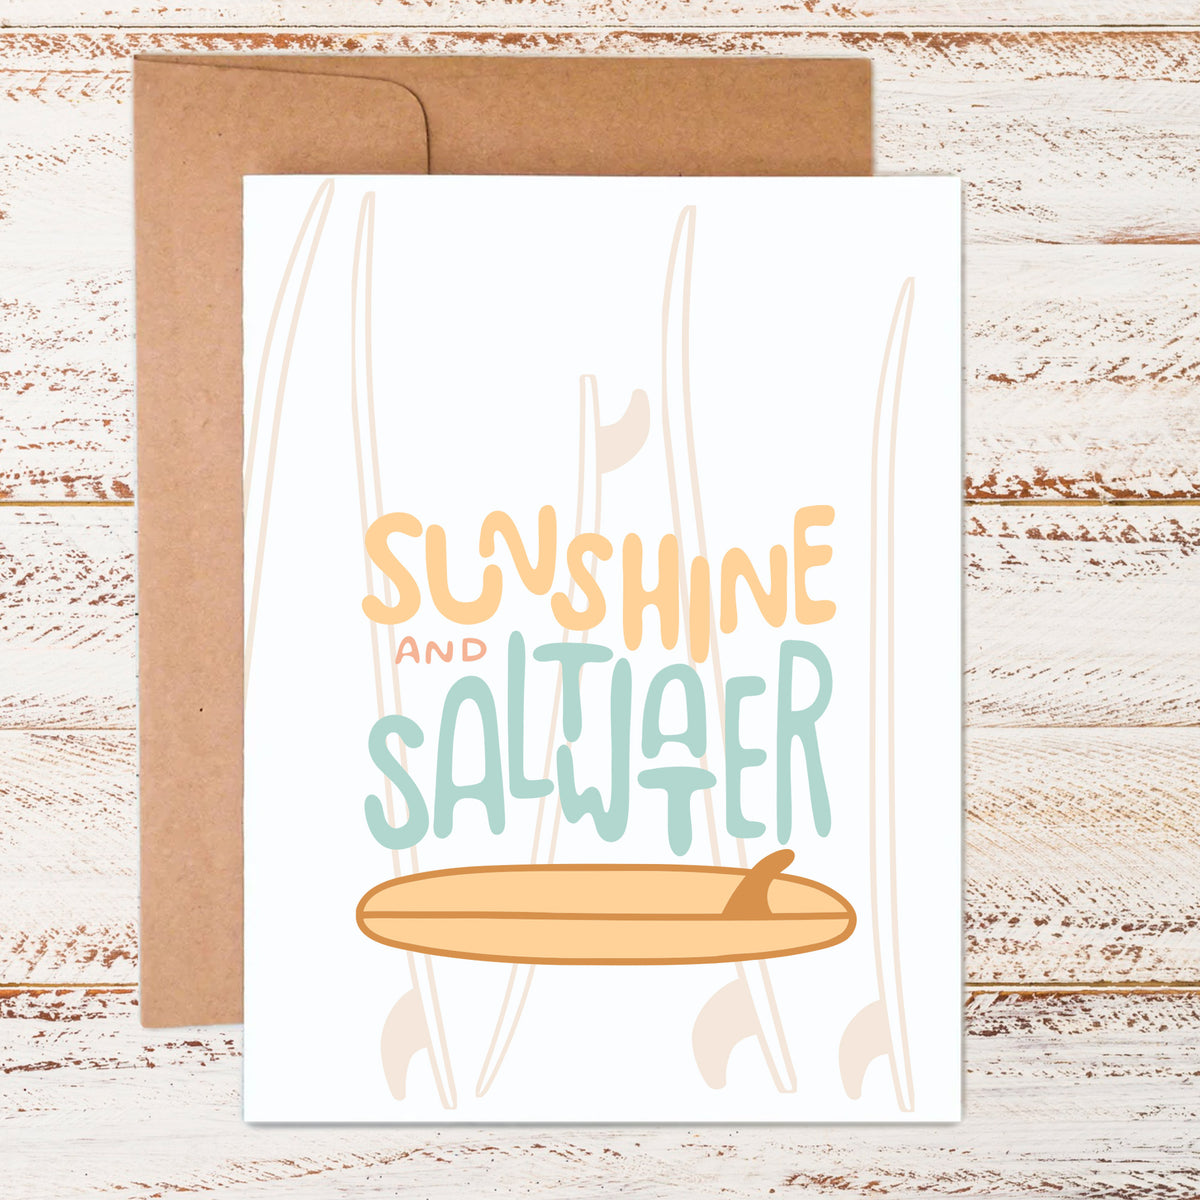 Sun. Salt. Surf. | Greeting Card